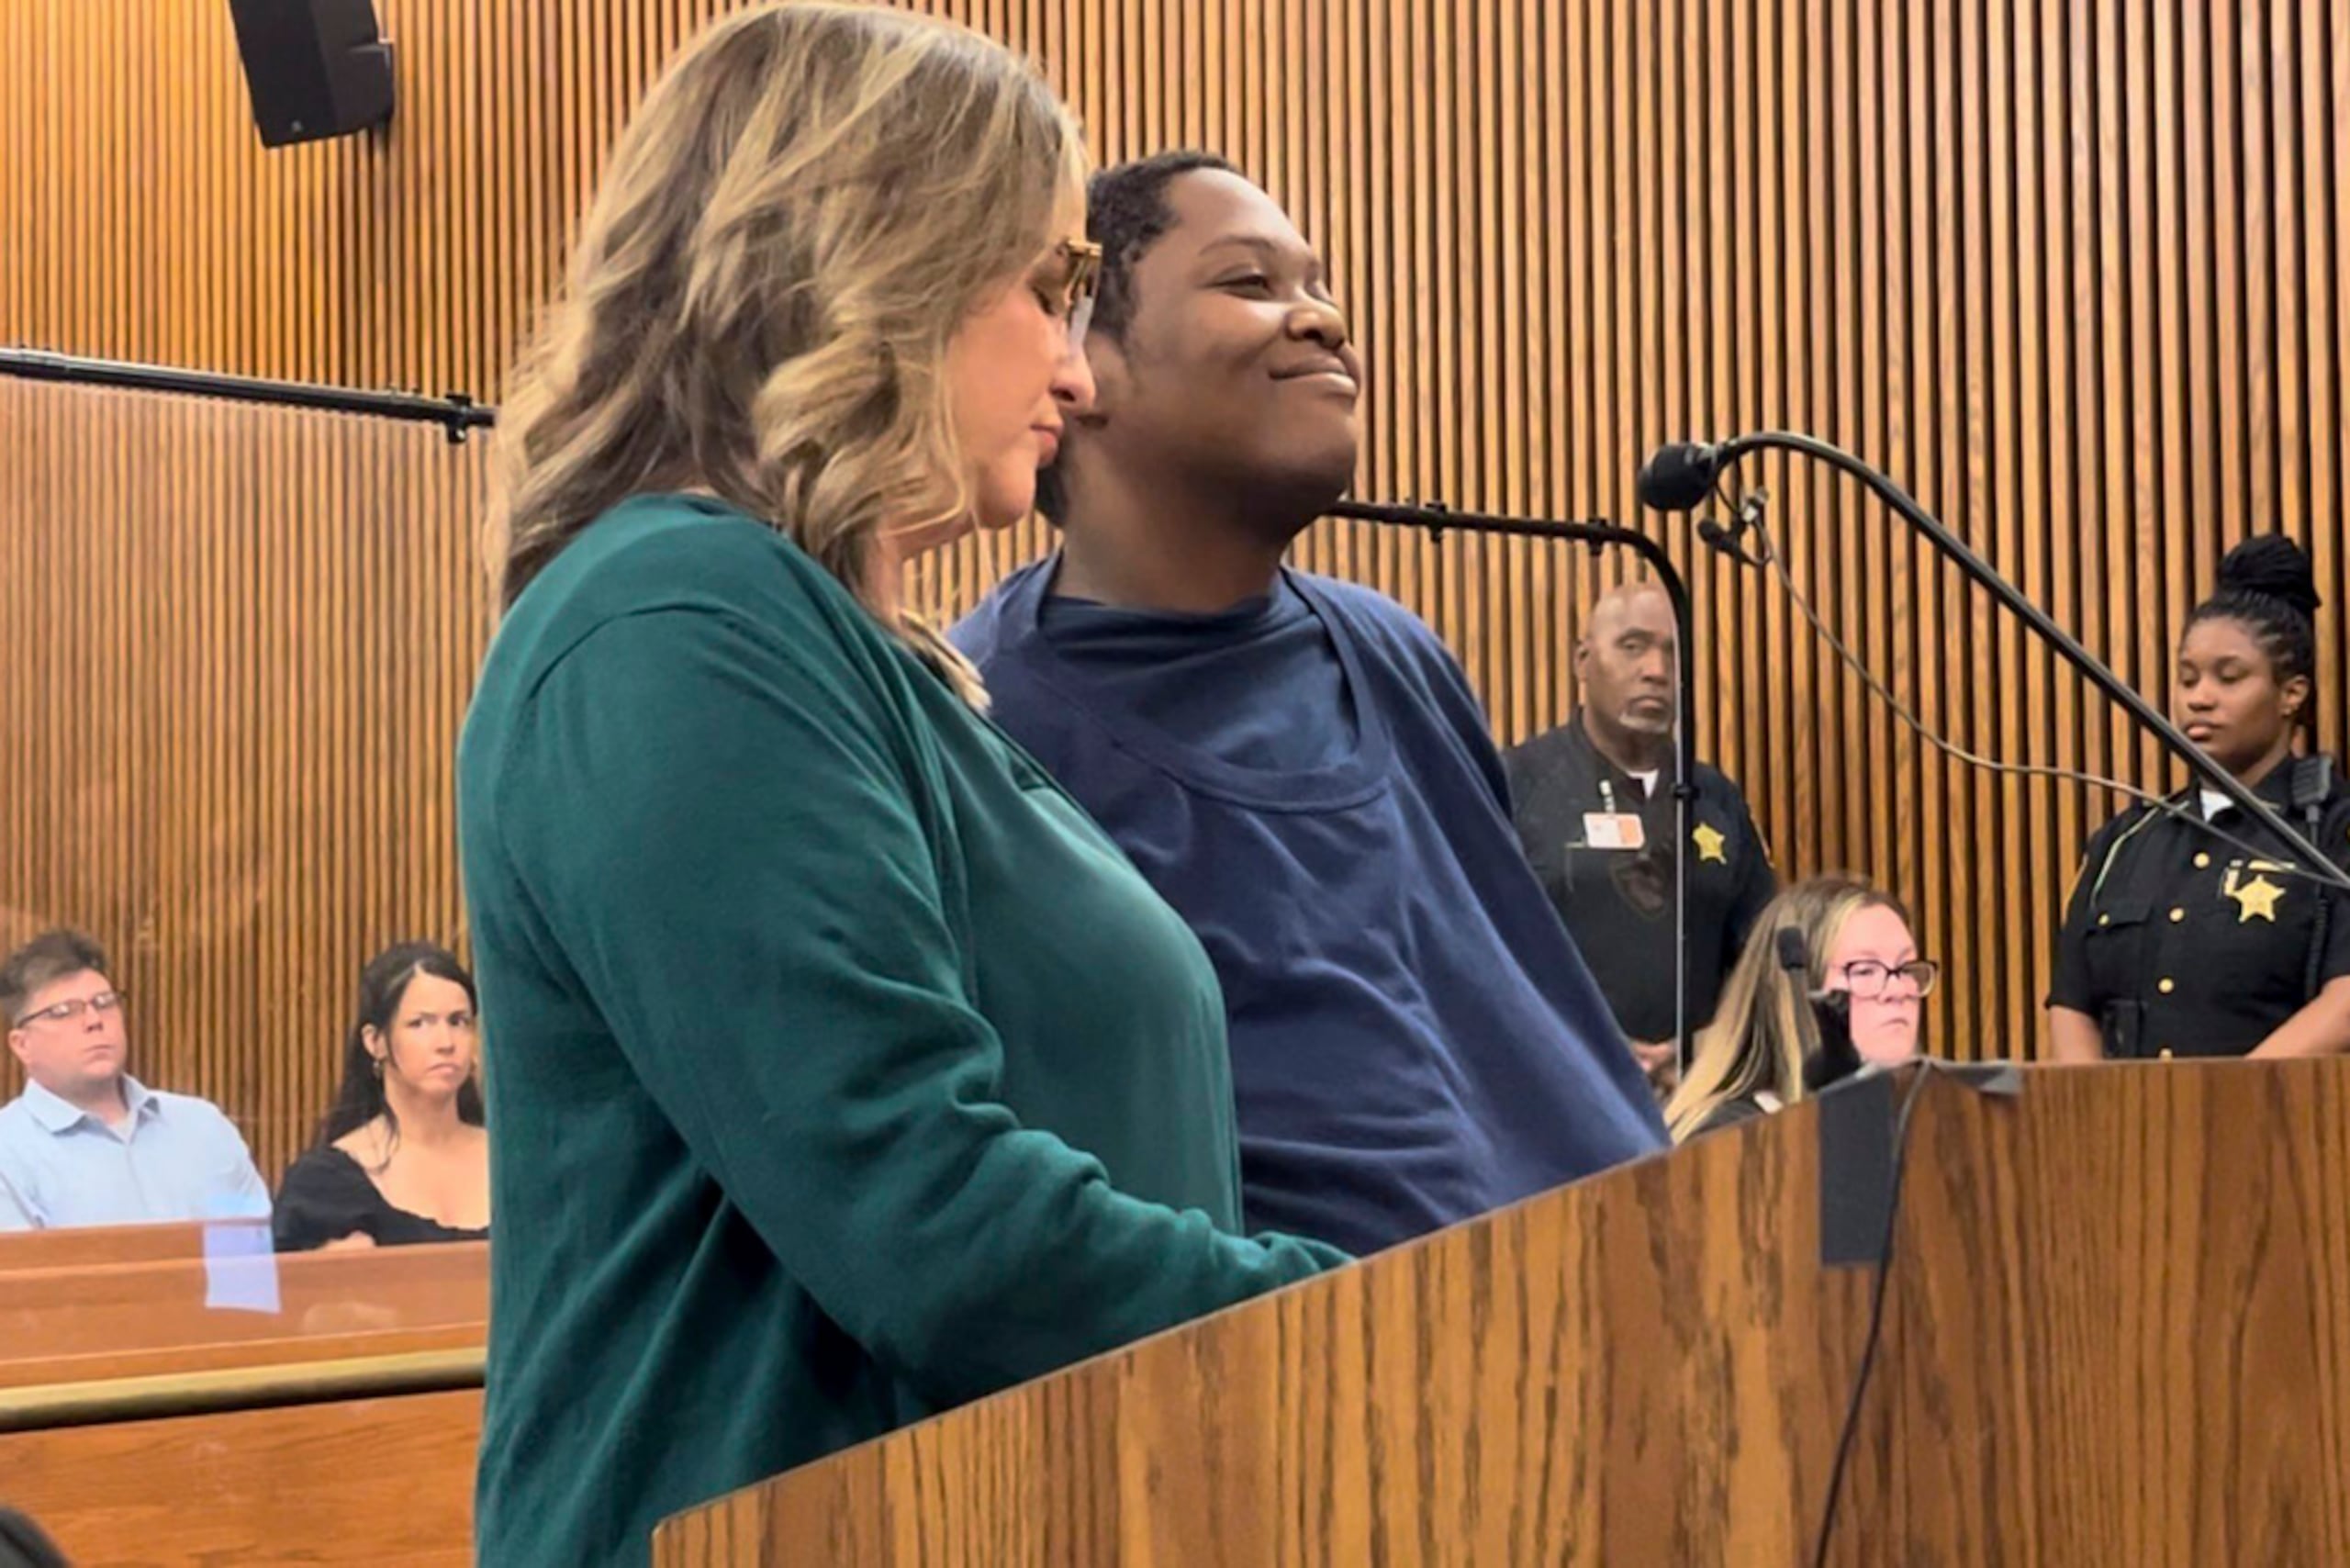 Bionca Ellis sonrió durante su comparece ante el tribunal del condado de Cuyahoga el 10 de junio, en Cleveland, Ohio, por la muerte a puñaladas de Julian Wood, de 3 años, en el estacionamiento de un supermercado.